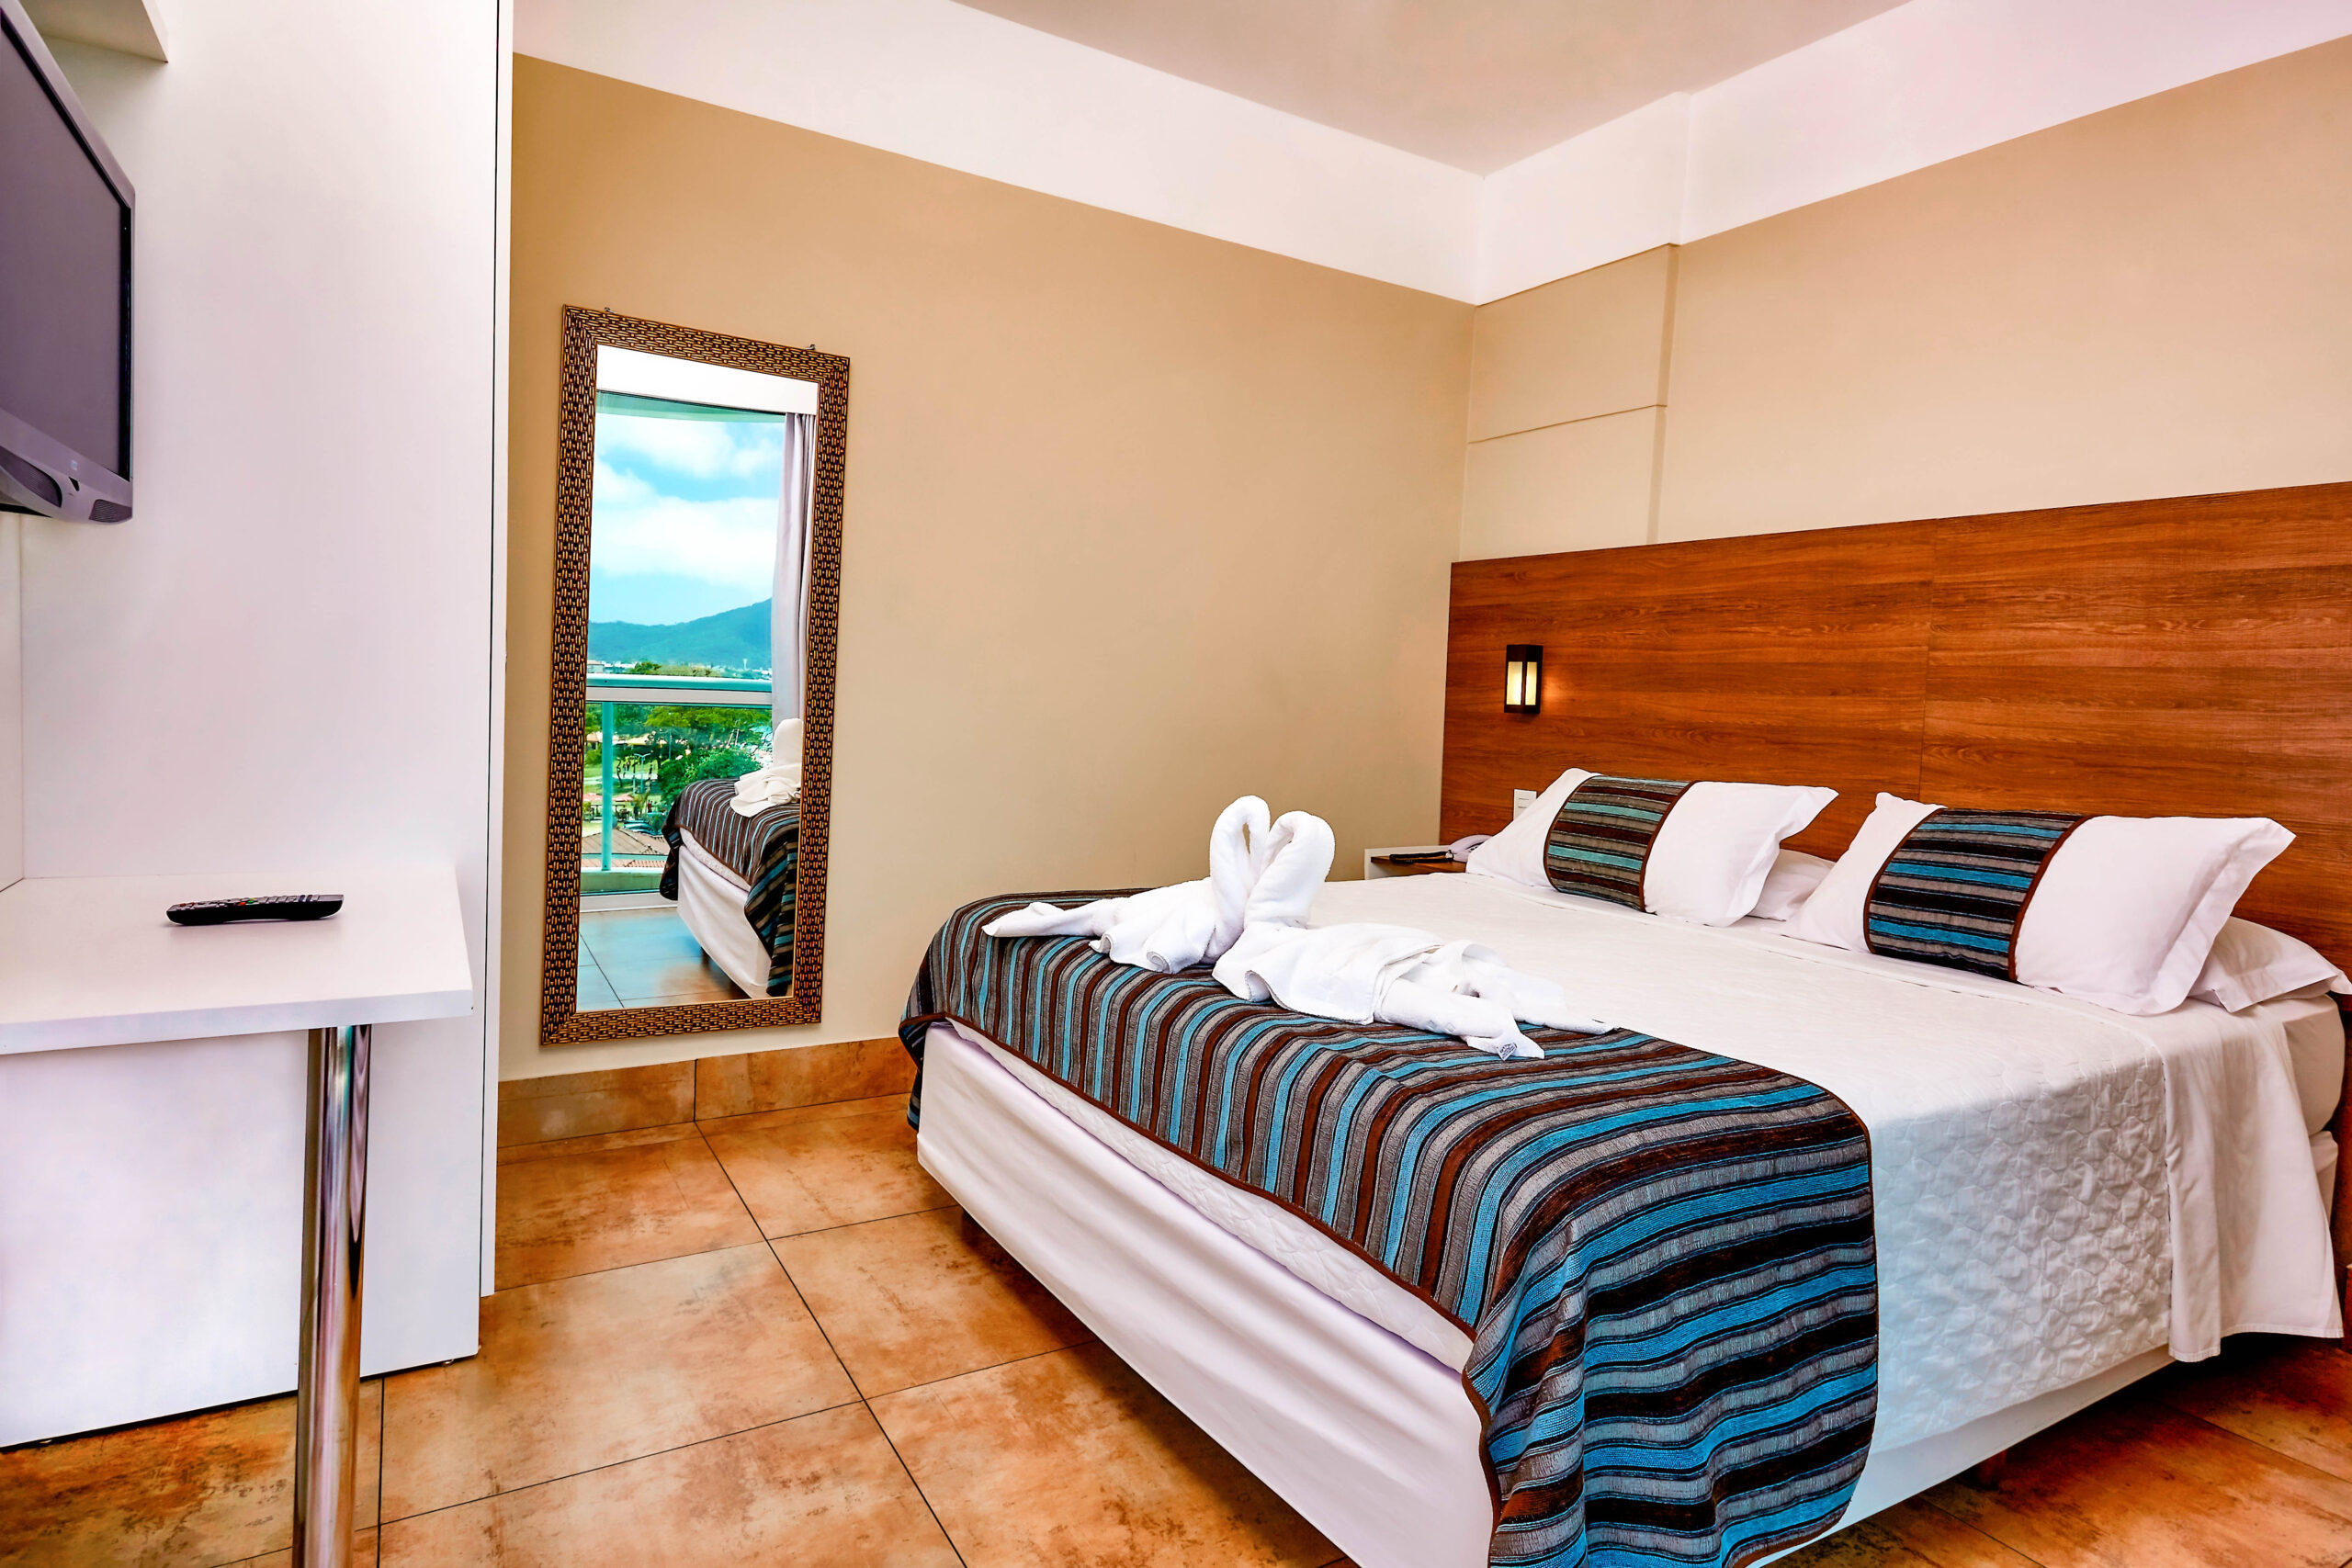 Hotel em Florianópolis: dicas para escolher o melhor para você